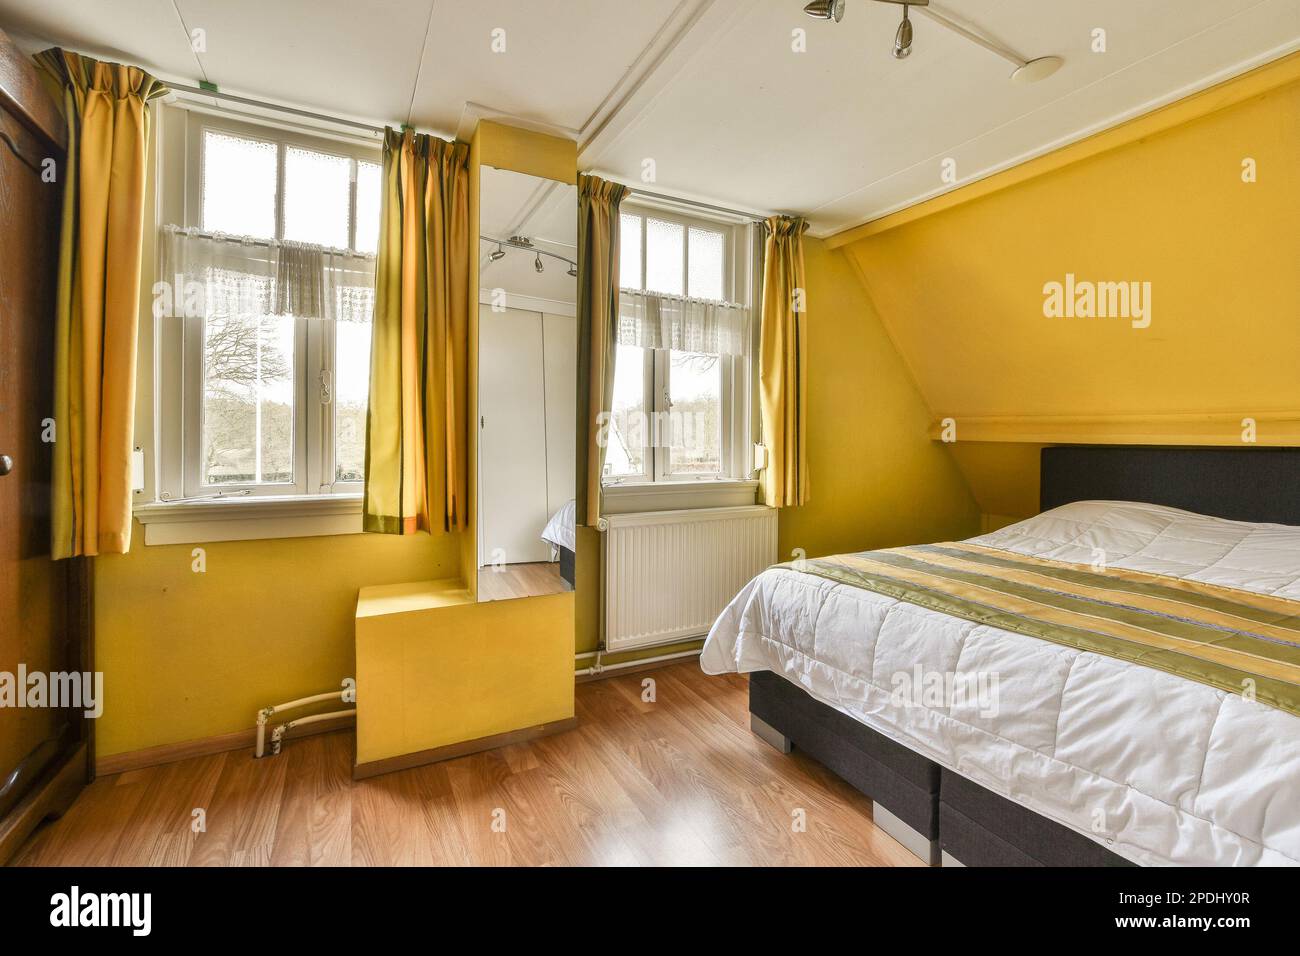 Ein Schlafzimmer mit gelben Wänden und Holzfußboden an der Wand, es gibt ein kleines Bett im Zimmer Stockfoto